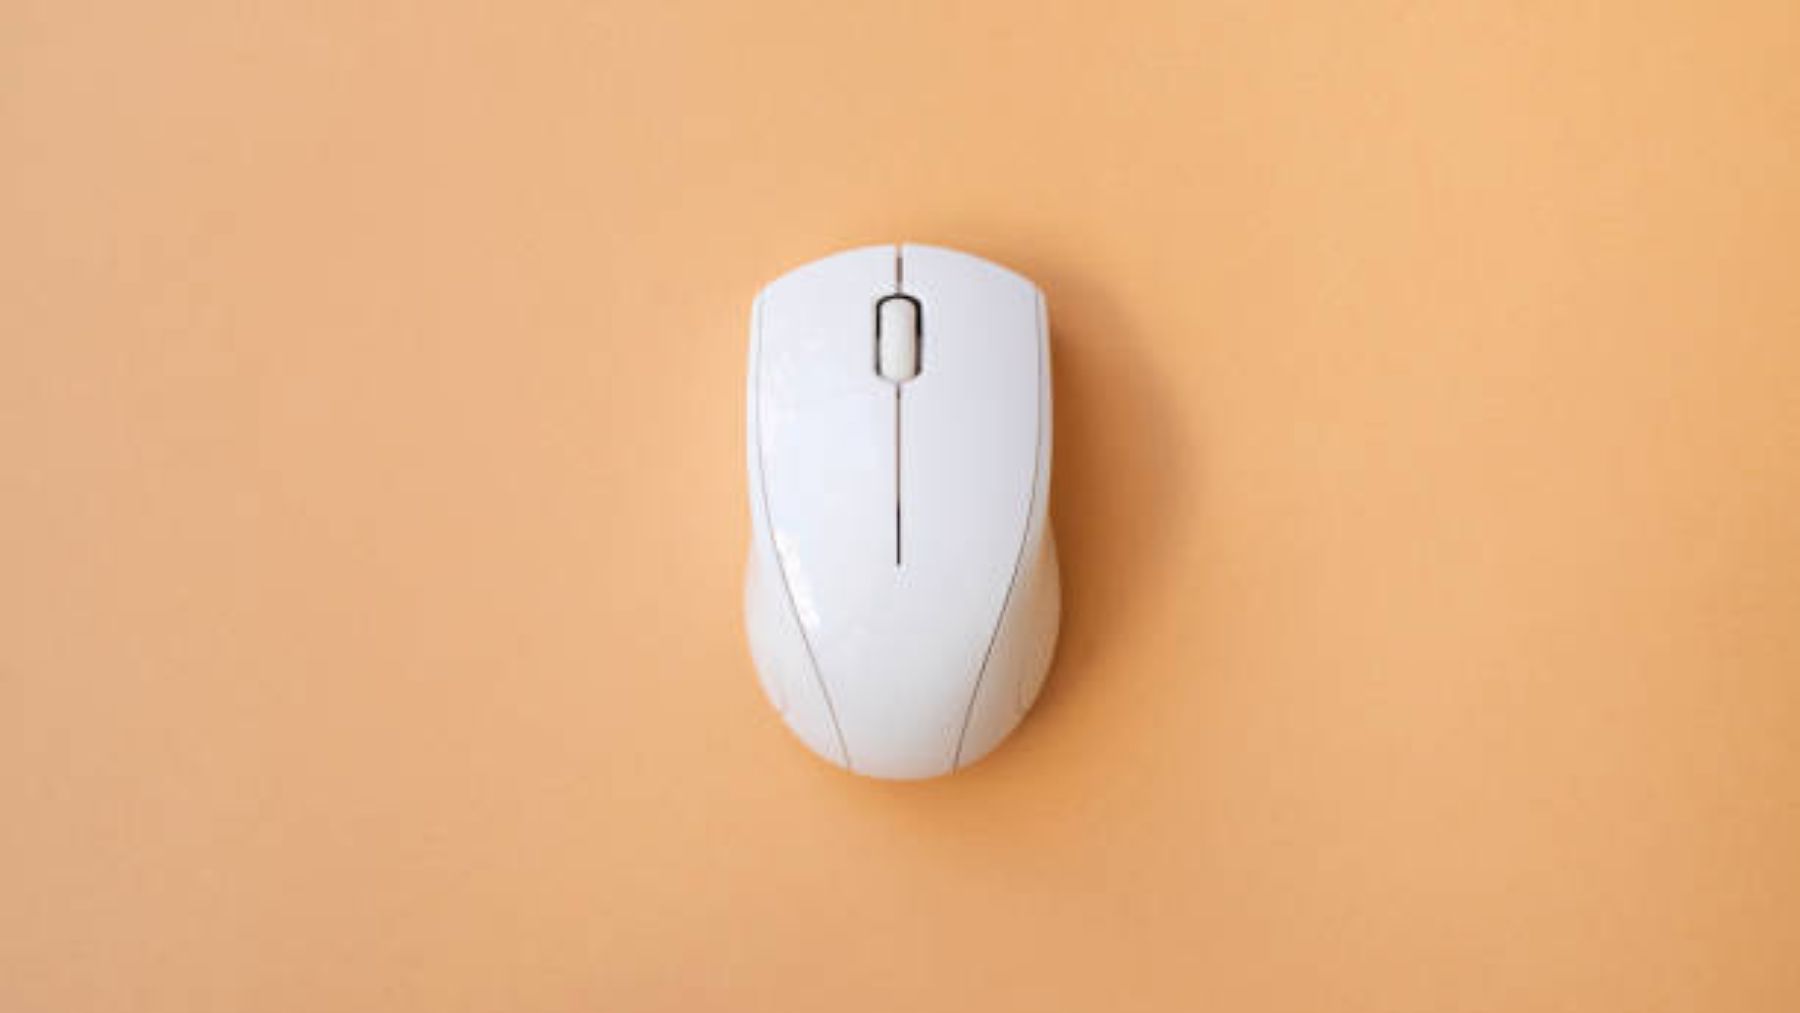 Quién inventó el mouse para el ordenador?